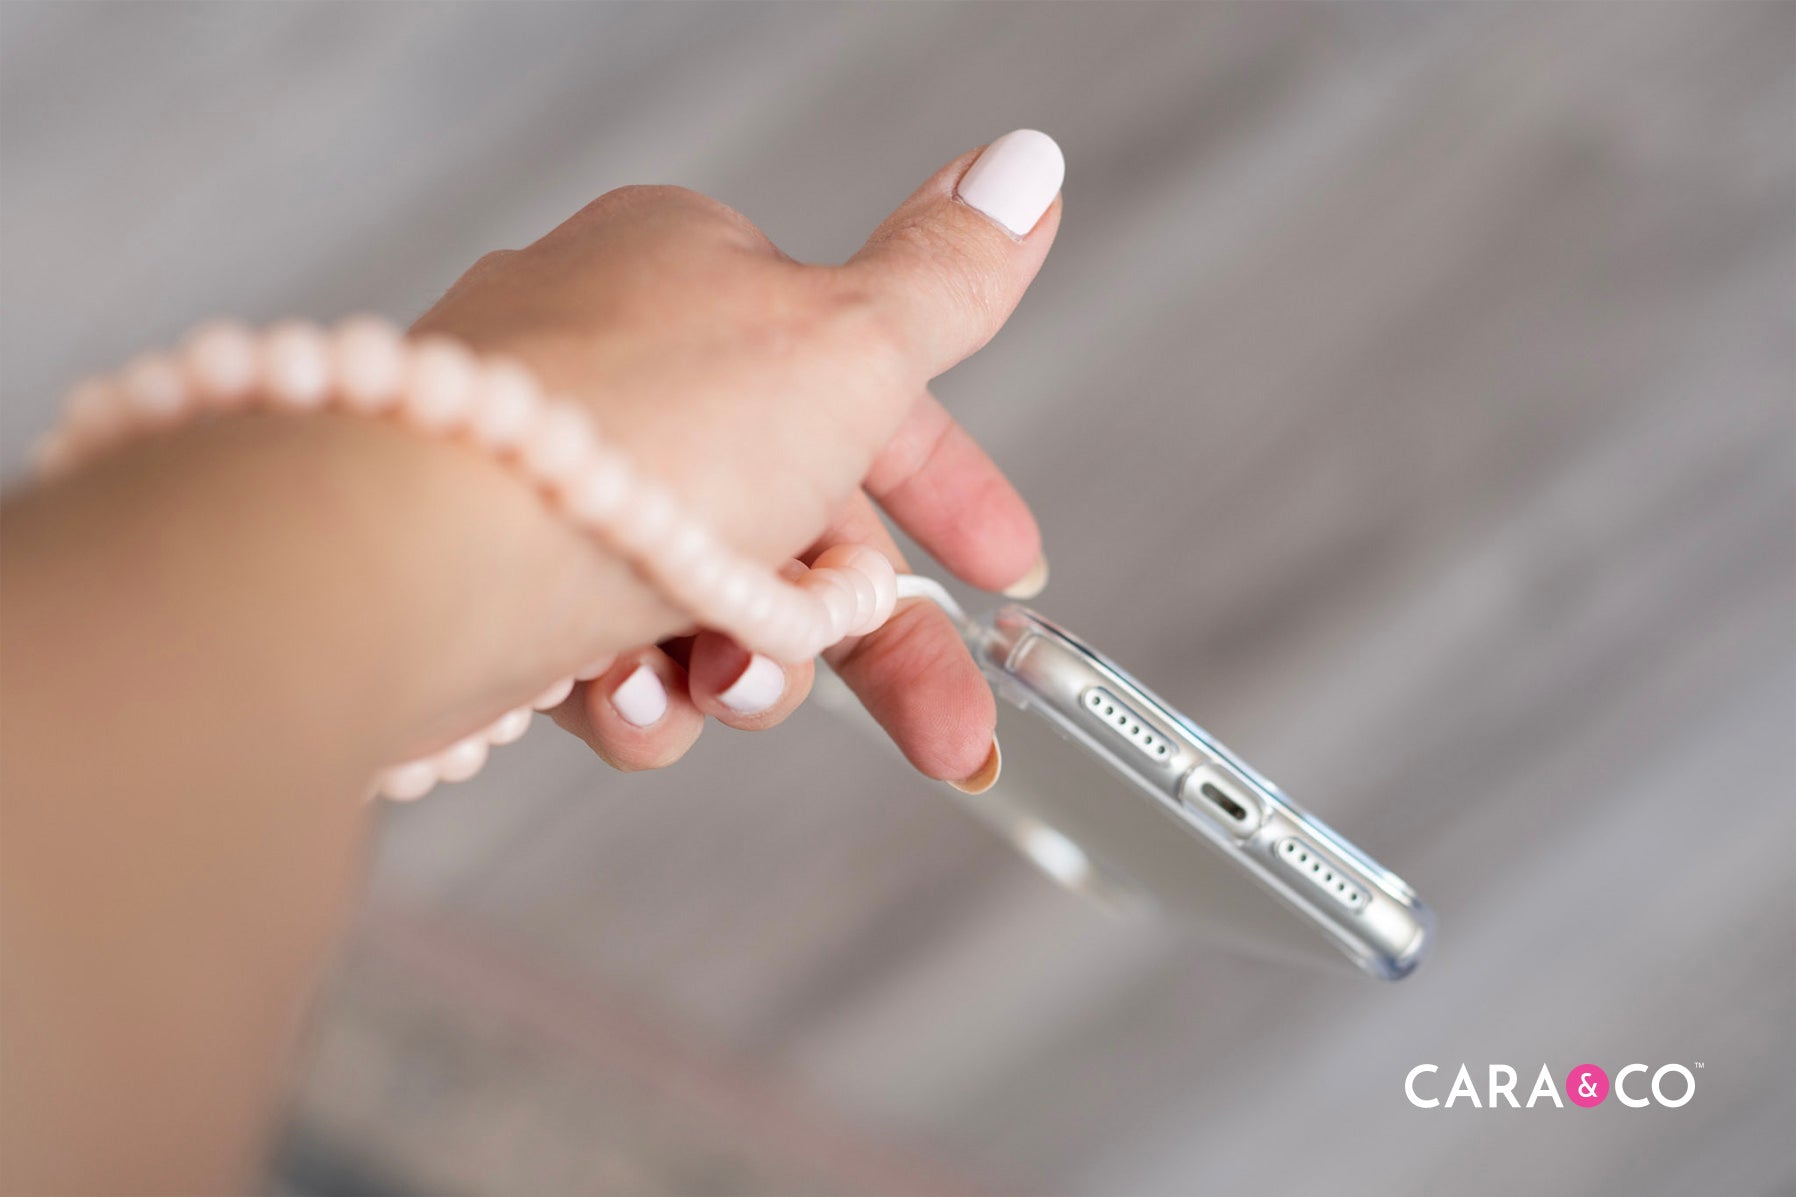 DIY Beaded Phone Wristlet - Cara & Co Inspirational Tutorials